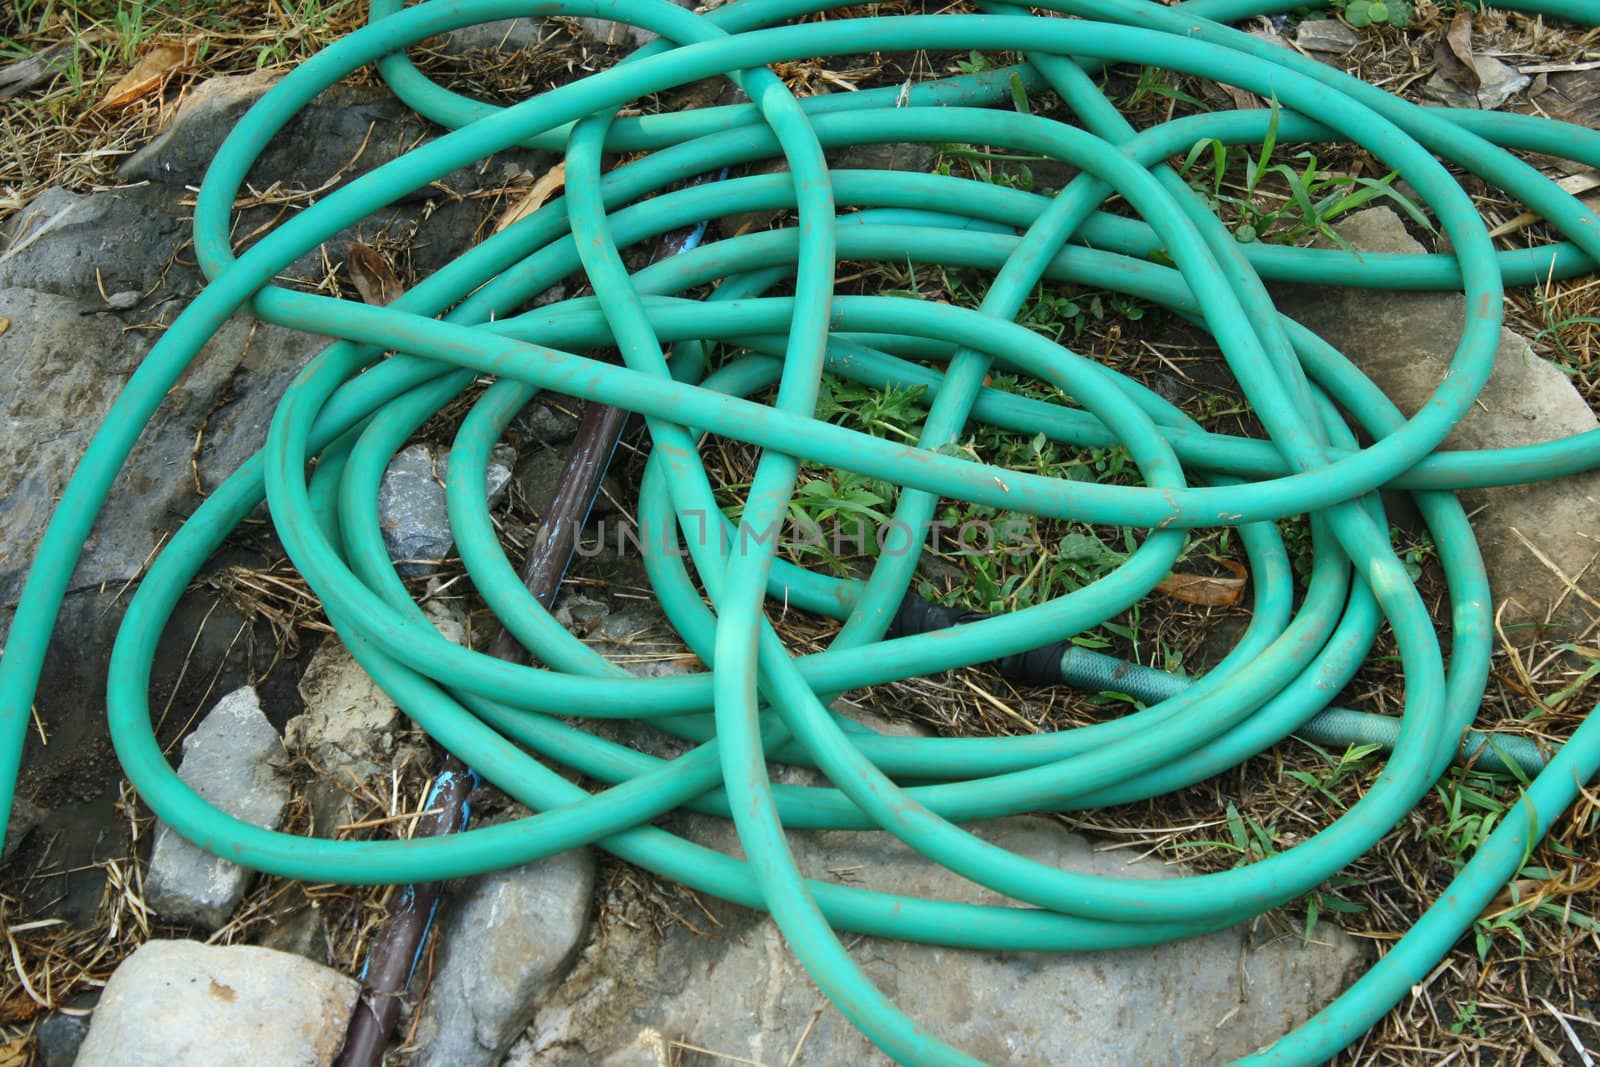 Water hose lie on the garden